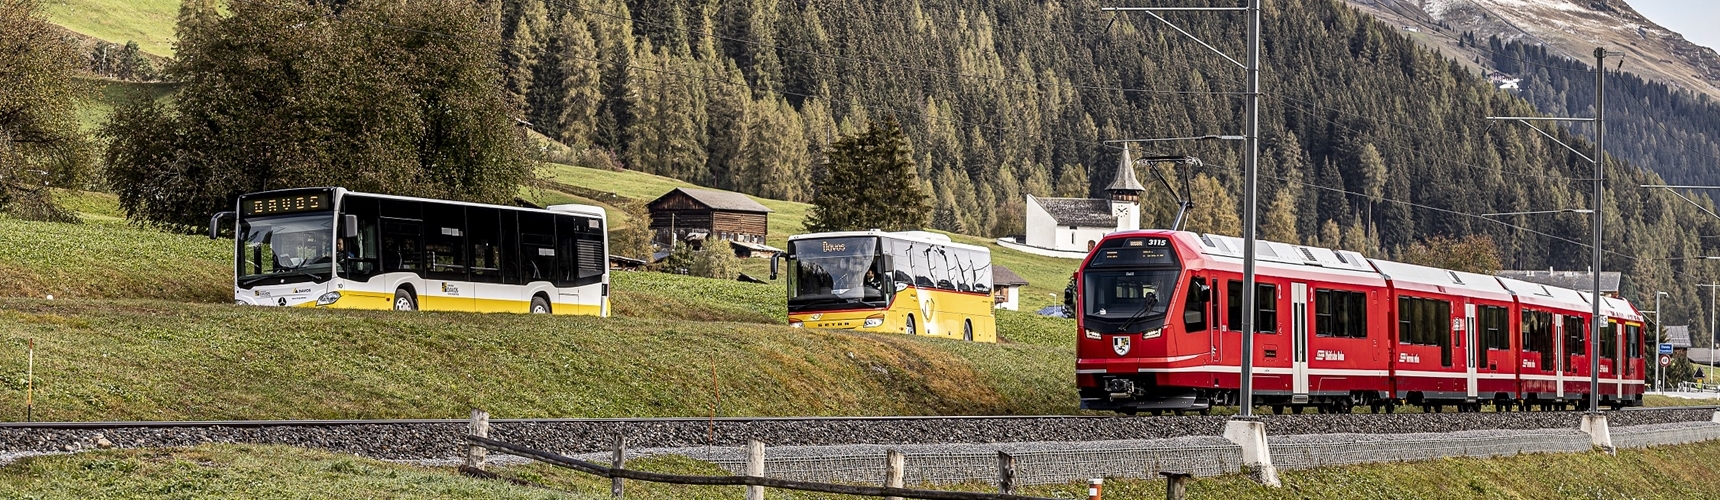 VBD, Postauto und RhB bilden das Netz des öffentlichen Verkehrs in Davos